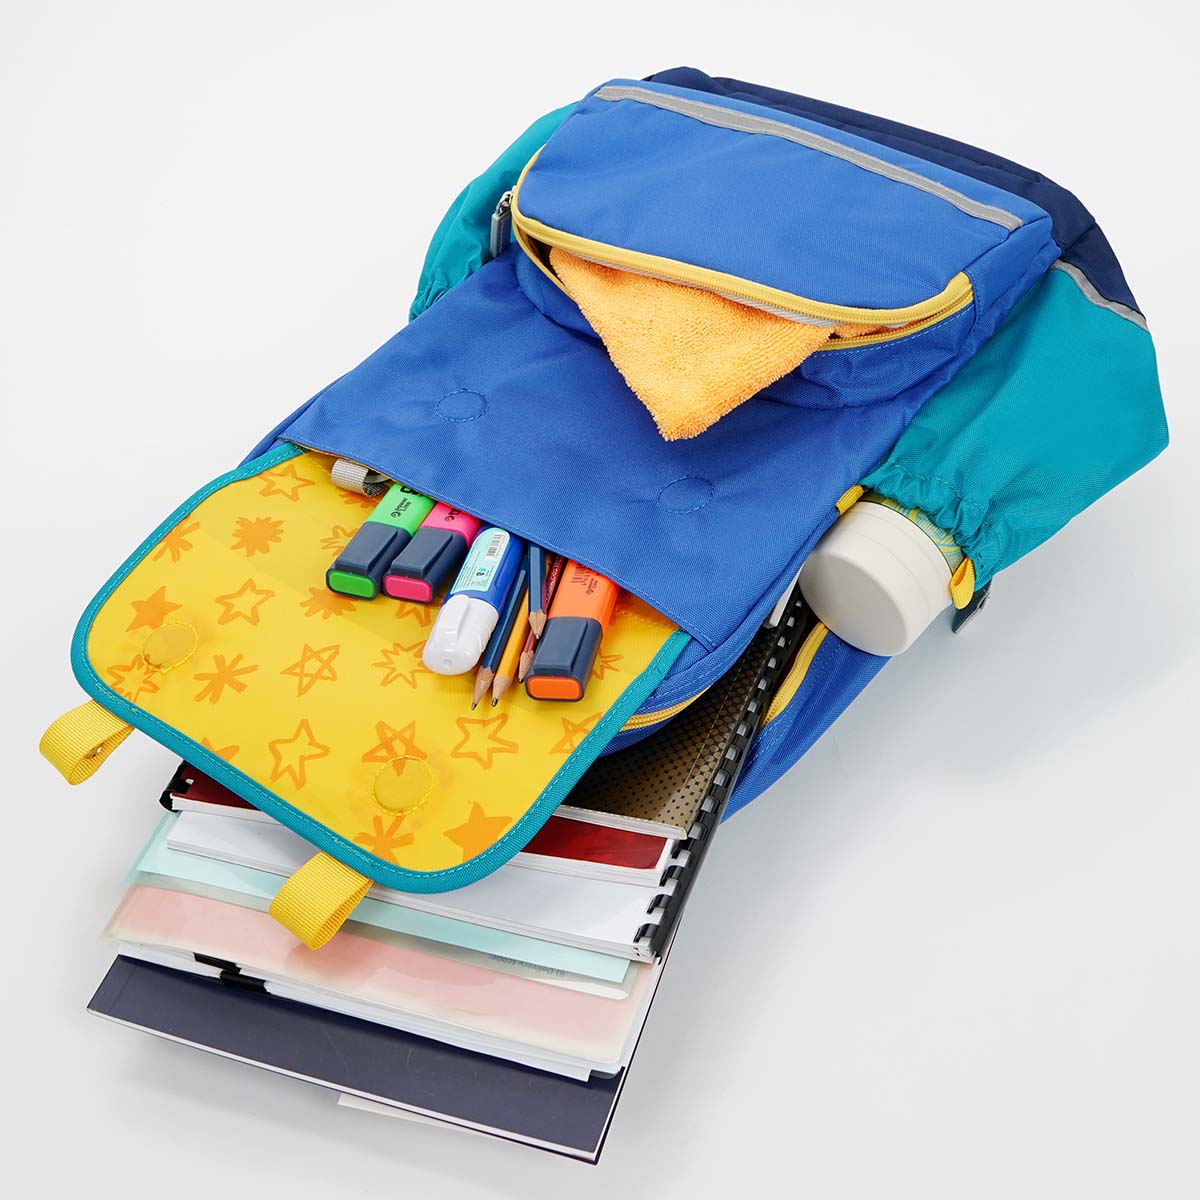 簡潔的設計糅合了多袋式設計，方便擺放上課用品之餘，也可讓孩子學習如何管理自己的雜物和「有手尾」。